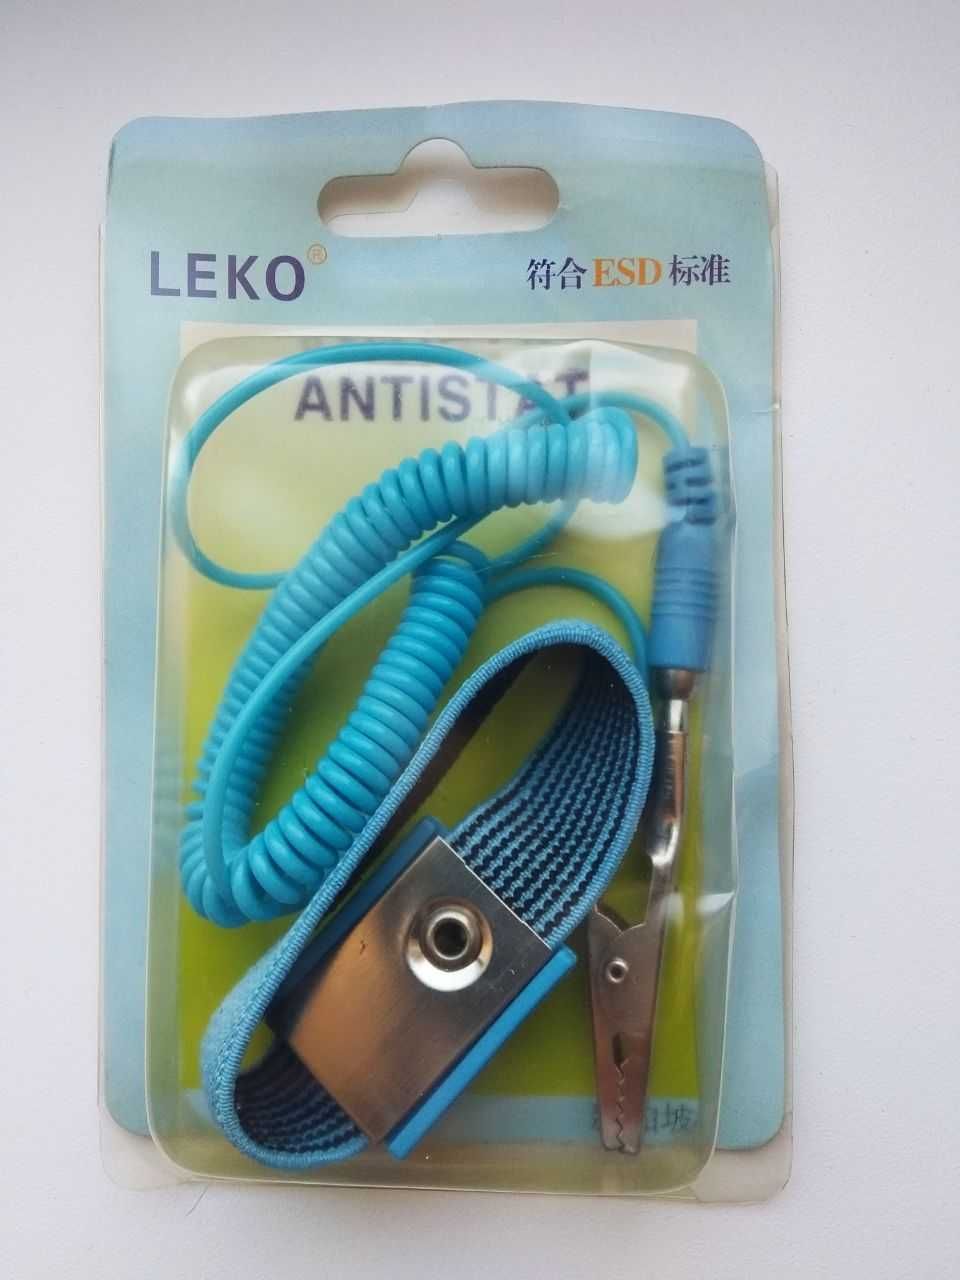 Антистатический браслет LEKO, кабель на запястье.